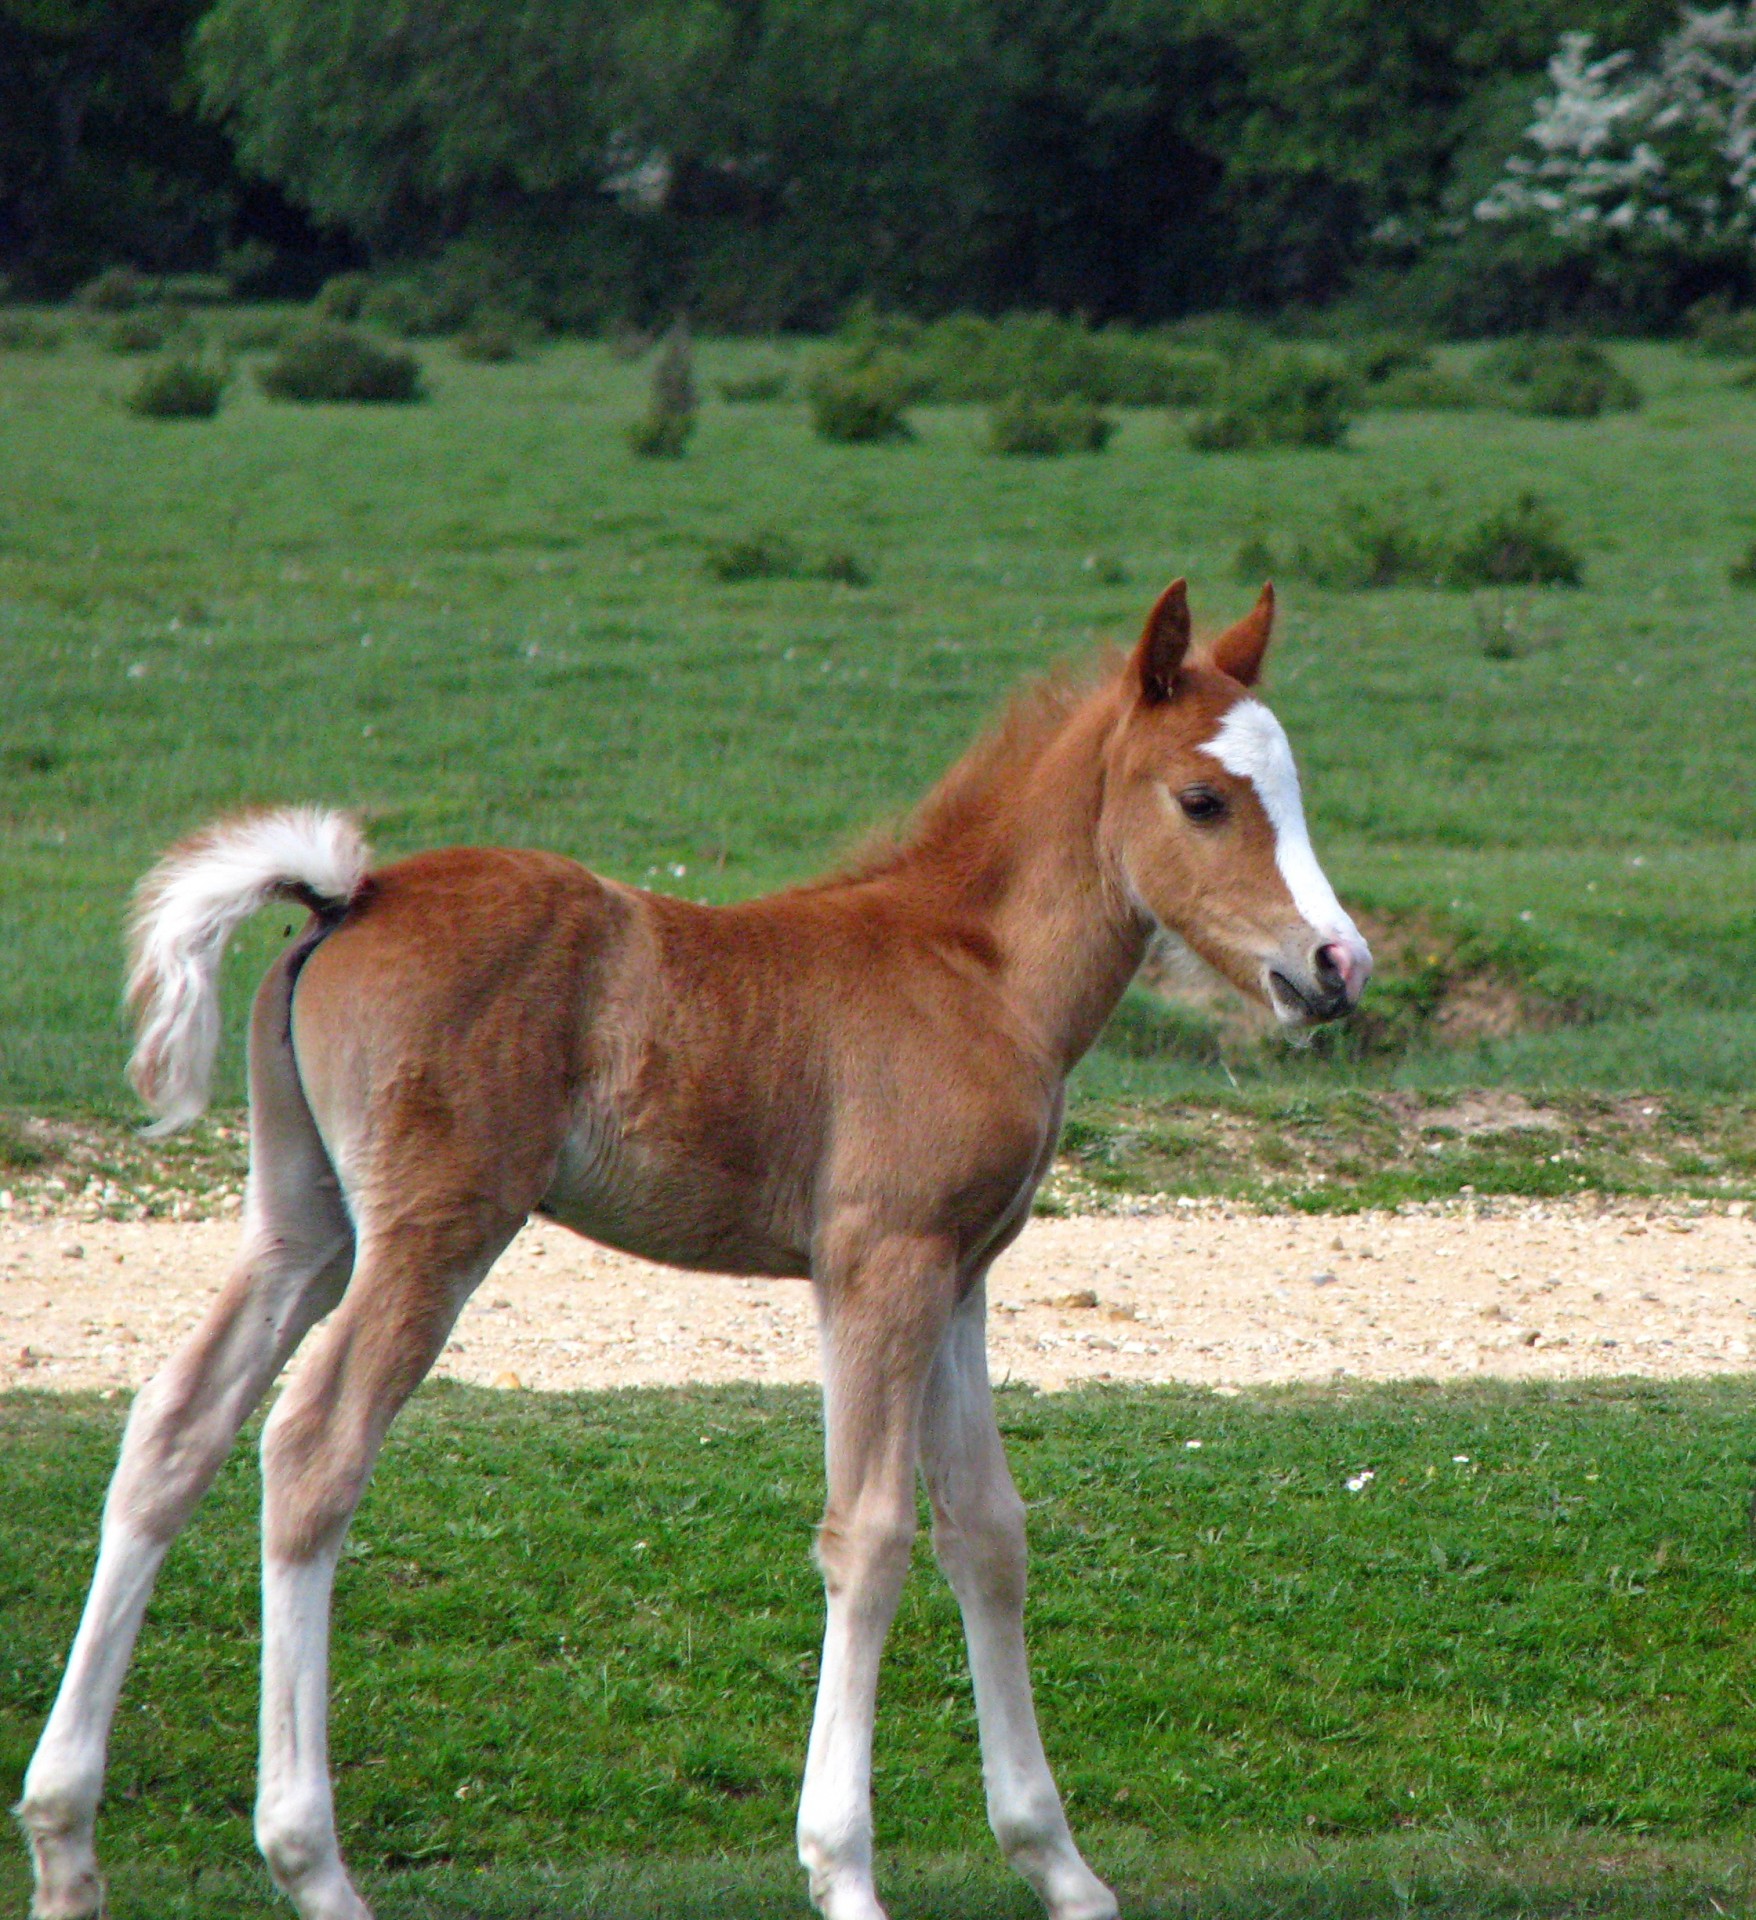 Cute baby horse, foal